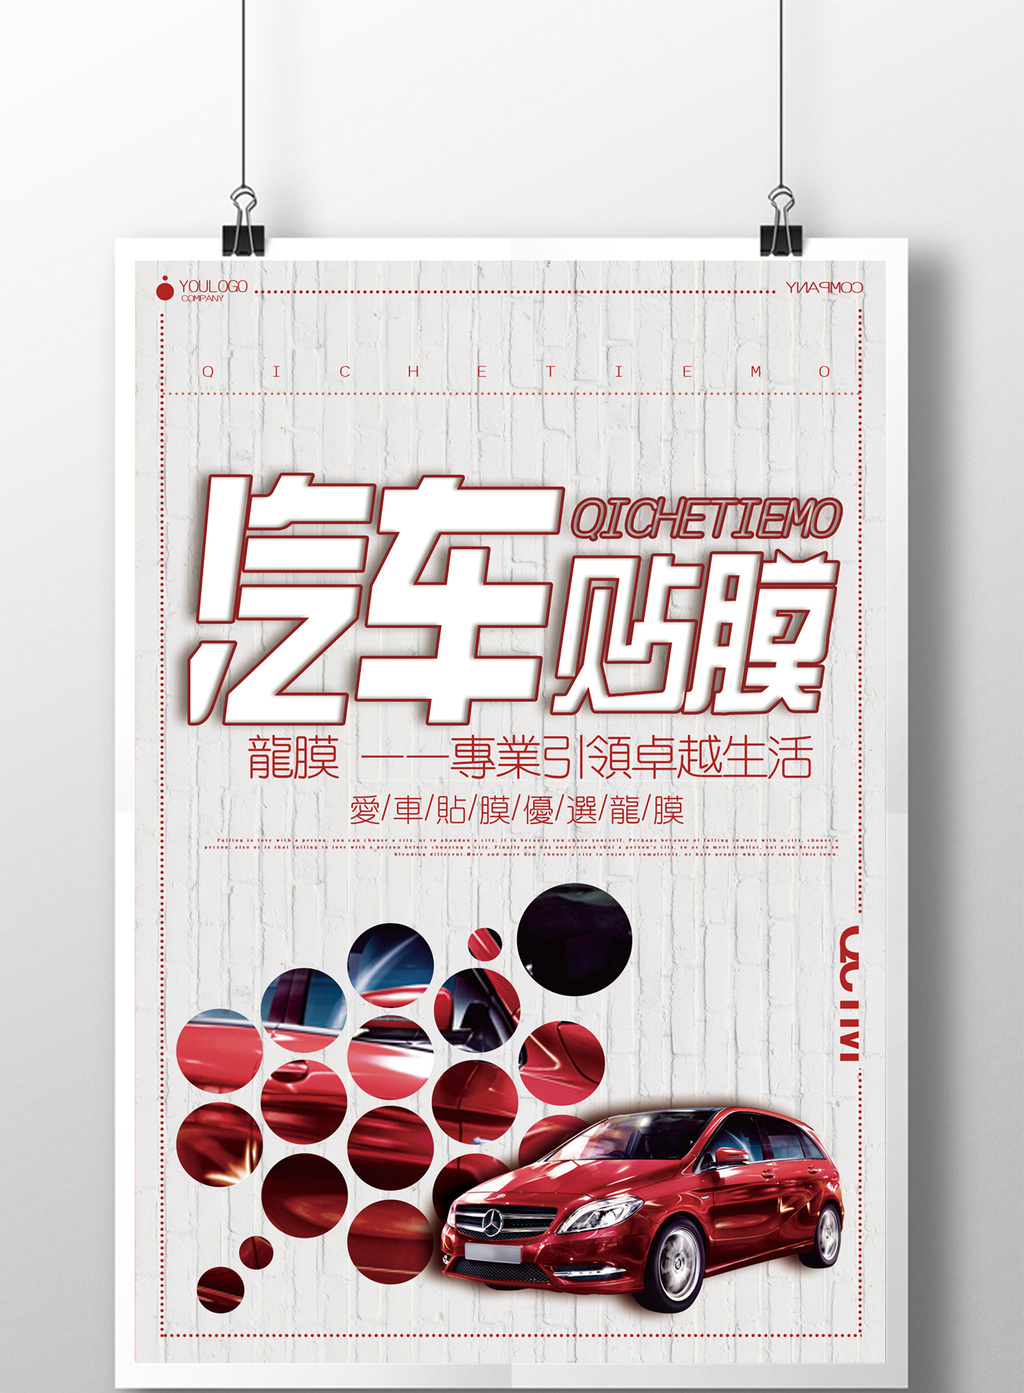 包图网提供精美好看的汽车贴膜海报下载素材免费下载,本次作品主题是